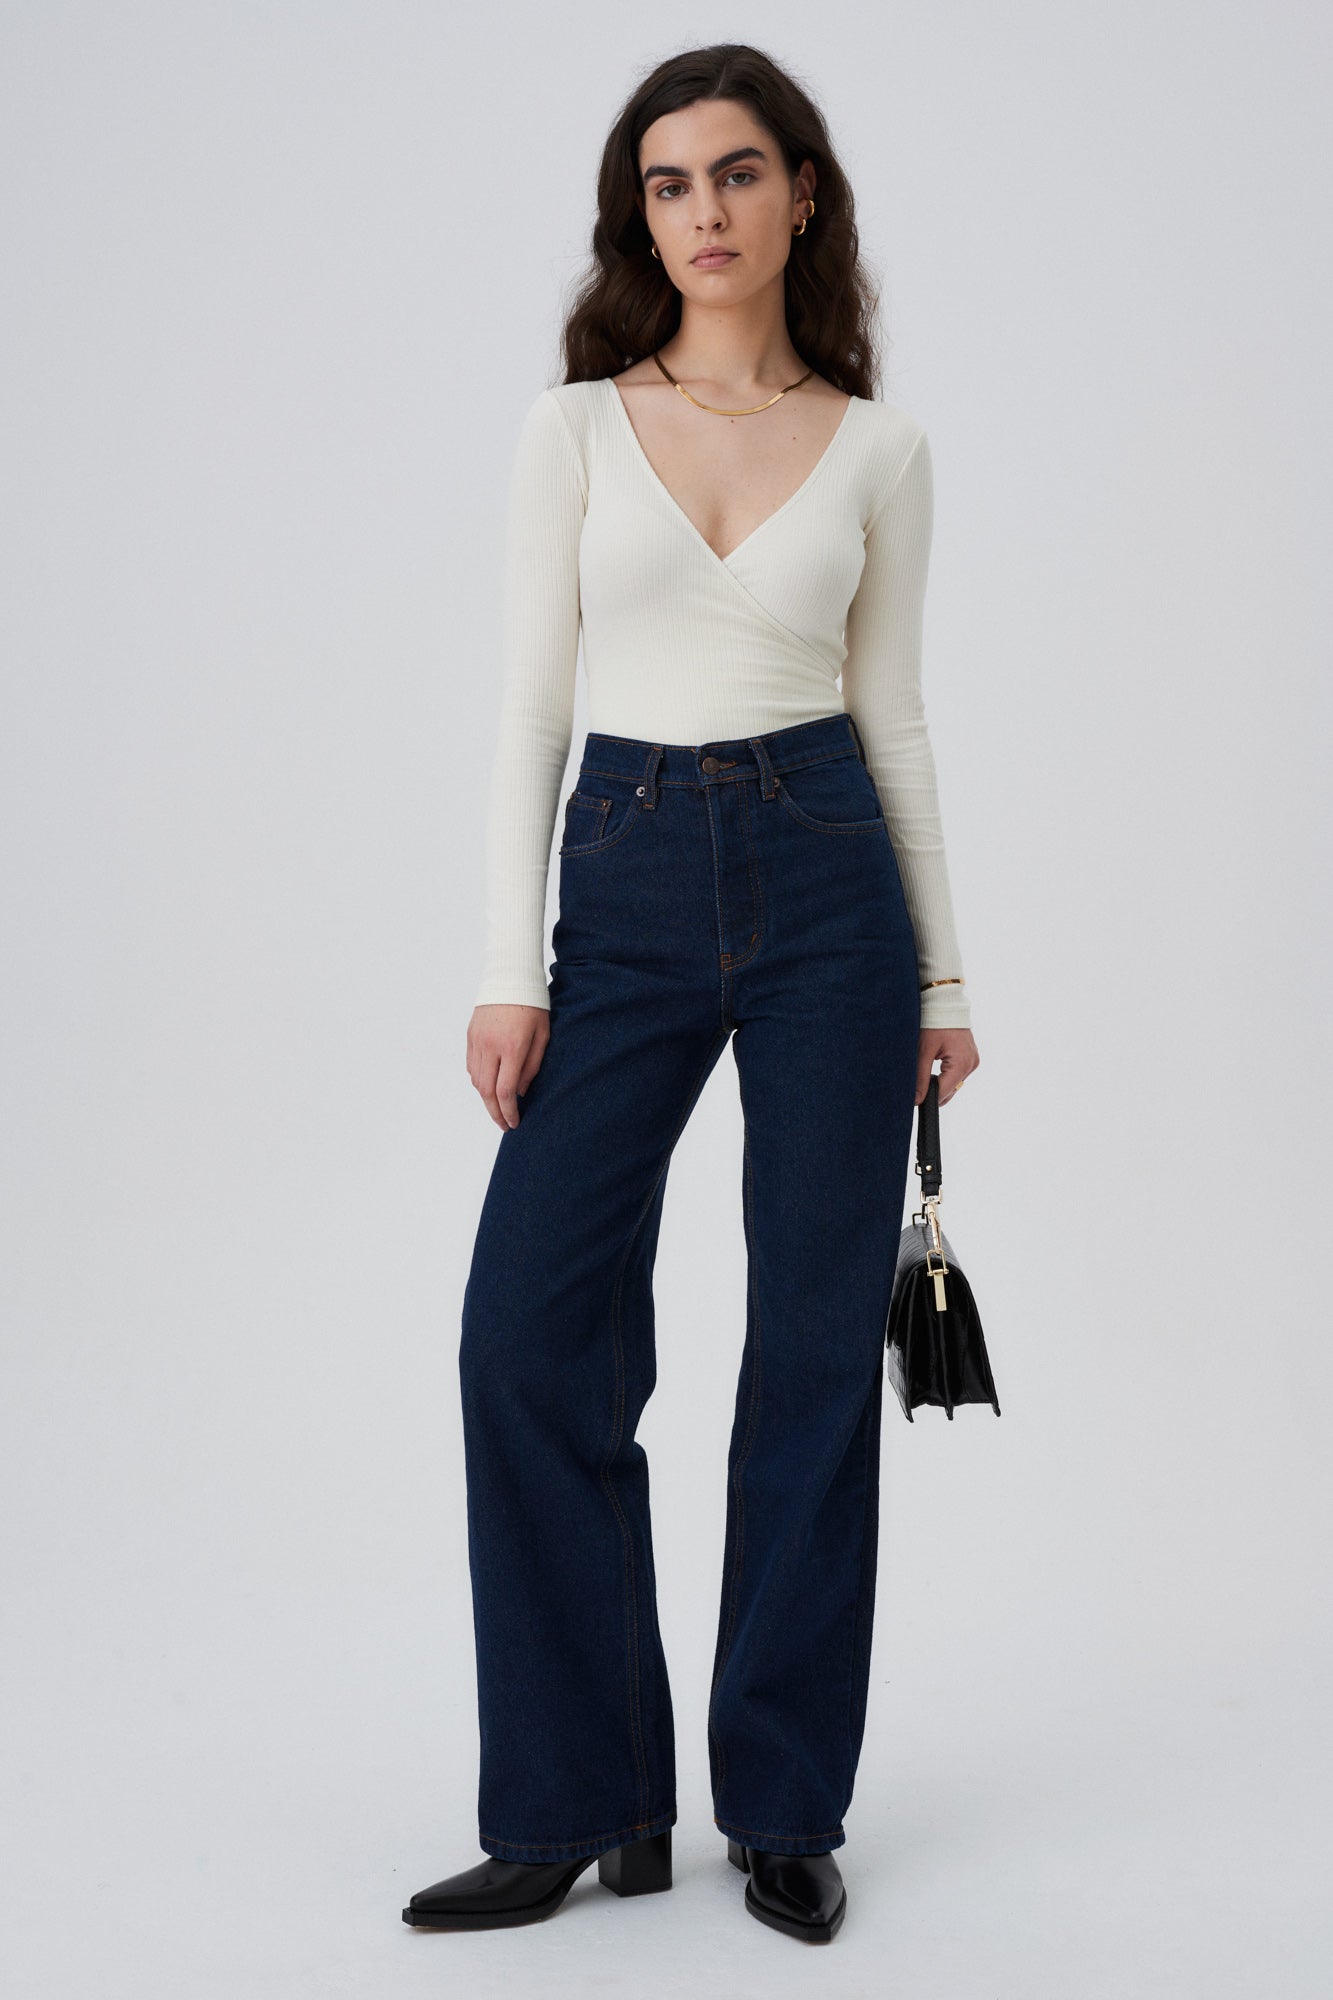 Body z bawełny organicznej / 01 / 06 / cream white *spodnie-jeansowe-05-13-dark-indigo* ?Modelka ma 172cm wzrostu i nosi rozmiar XS? 